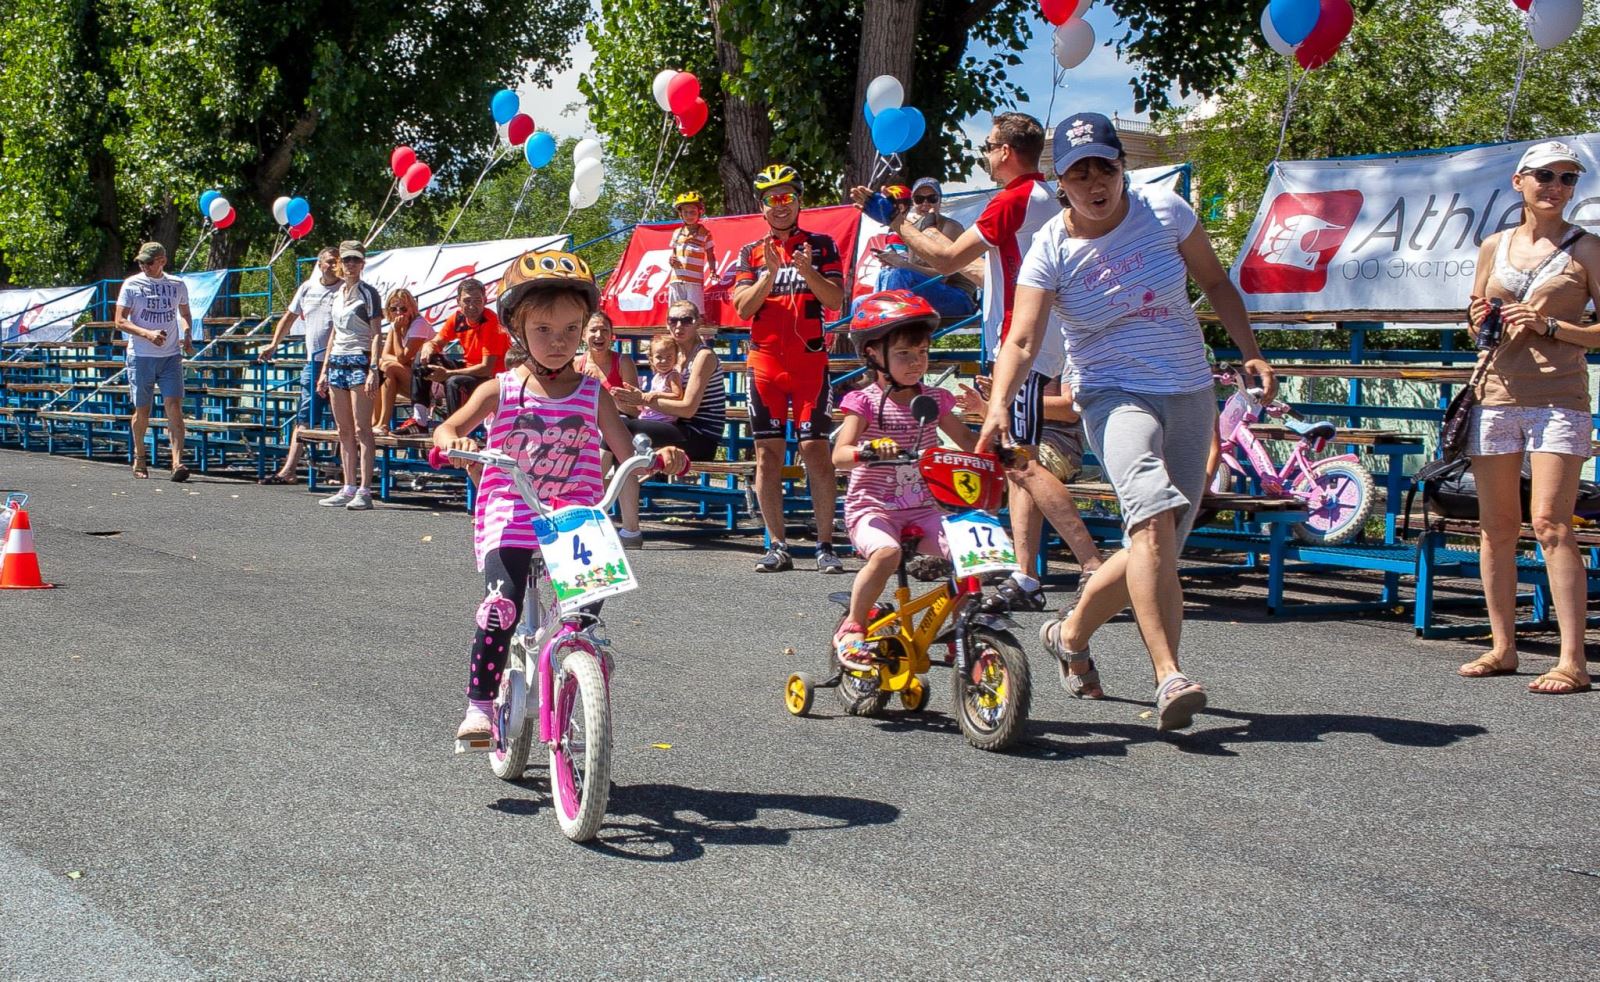 22 июня в Алматы на запасном поле Центрального стадиона прошли шестые детские велосоревнования.